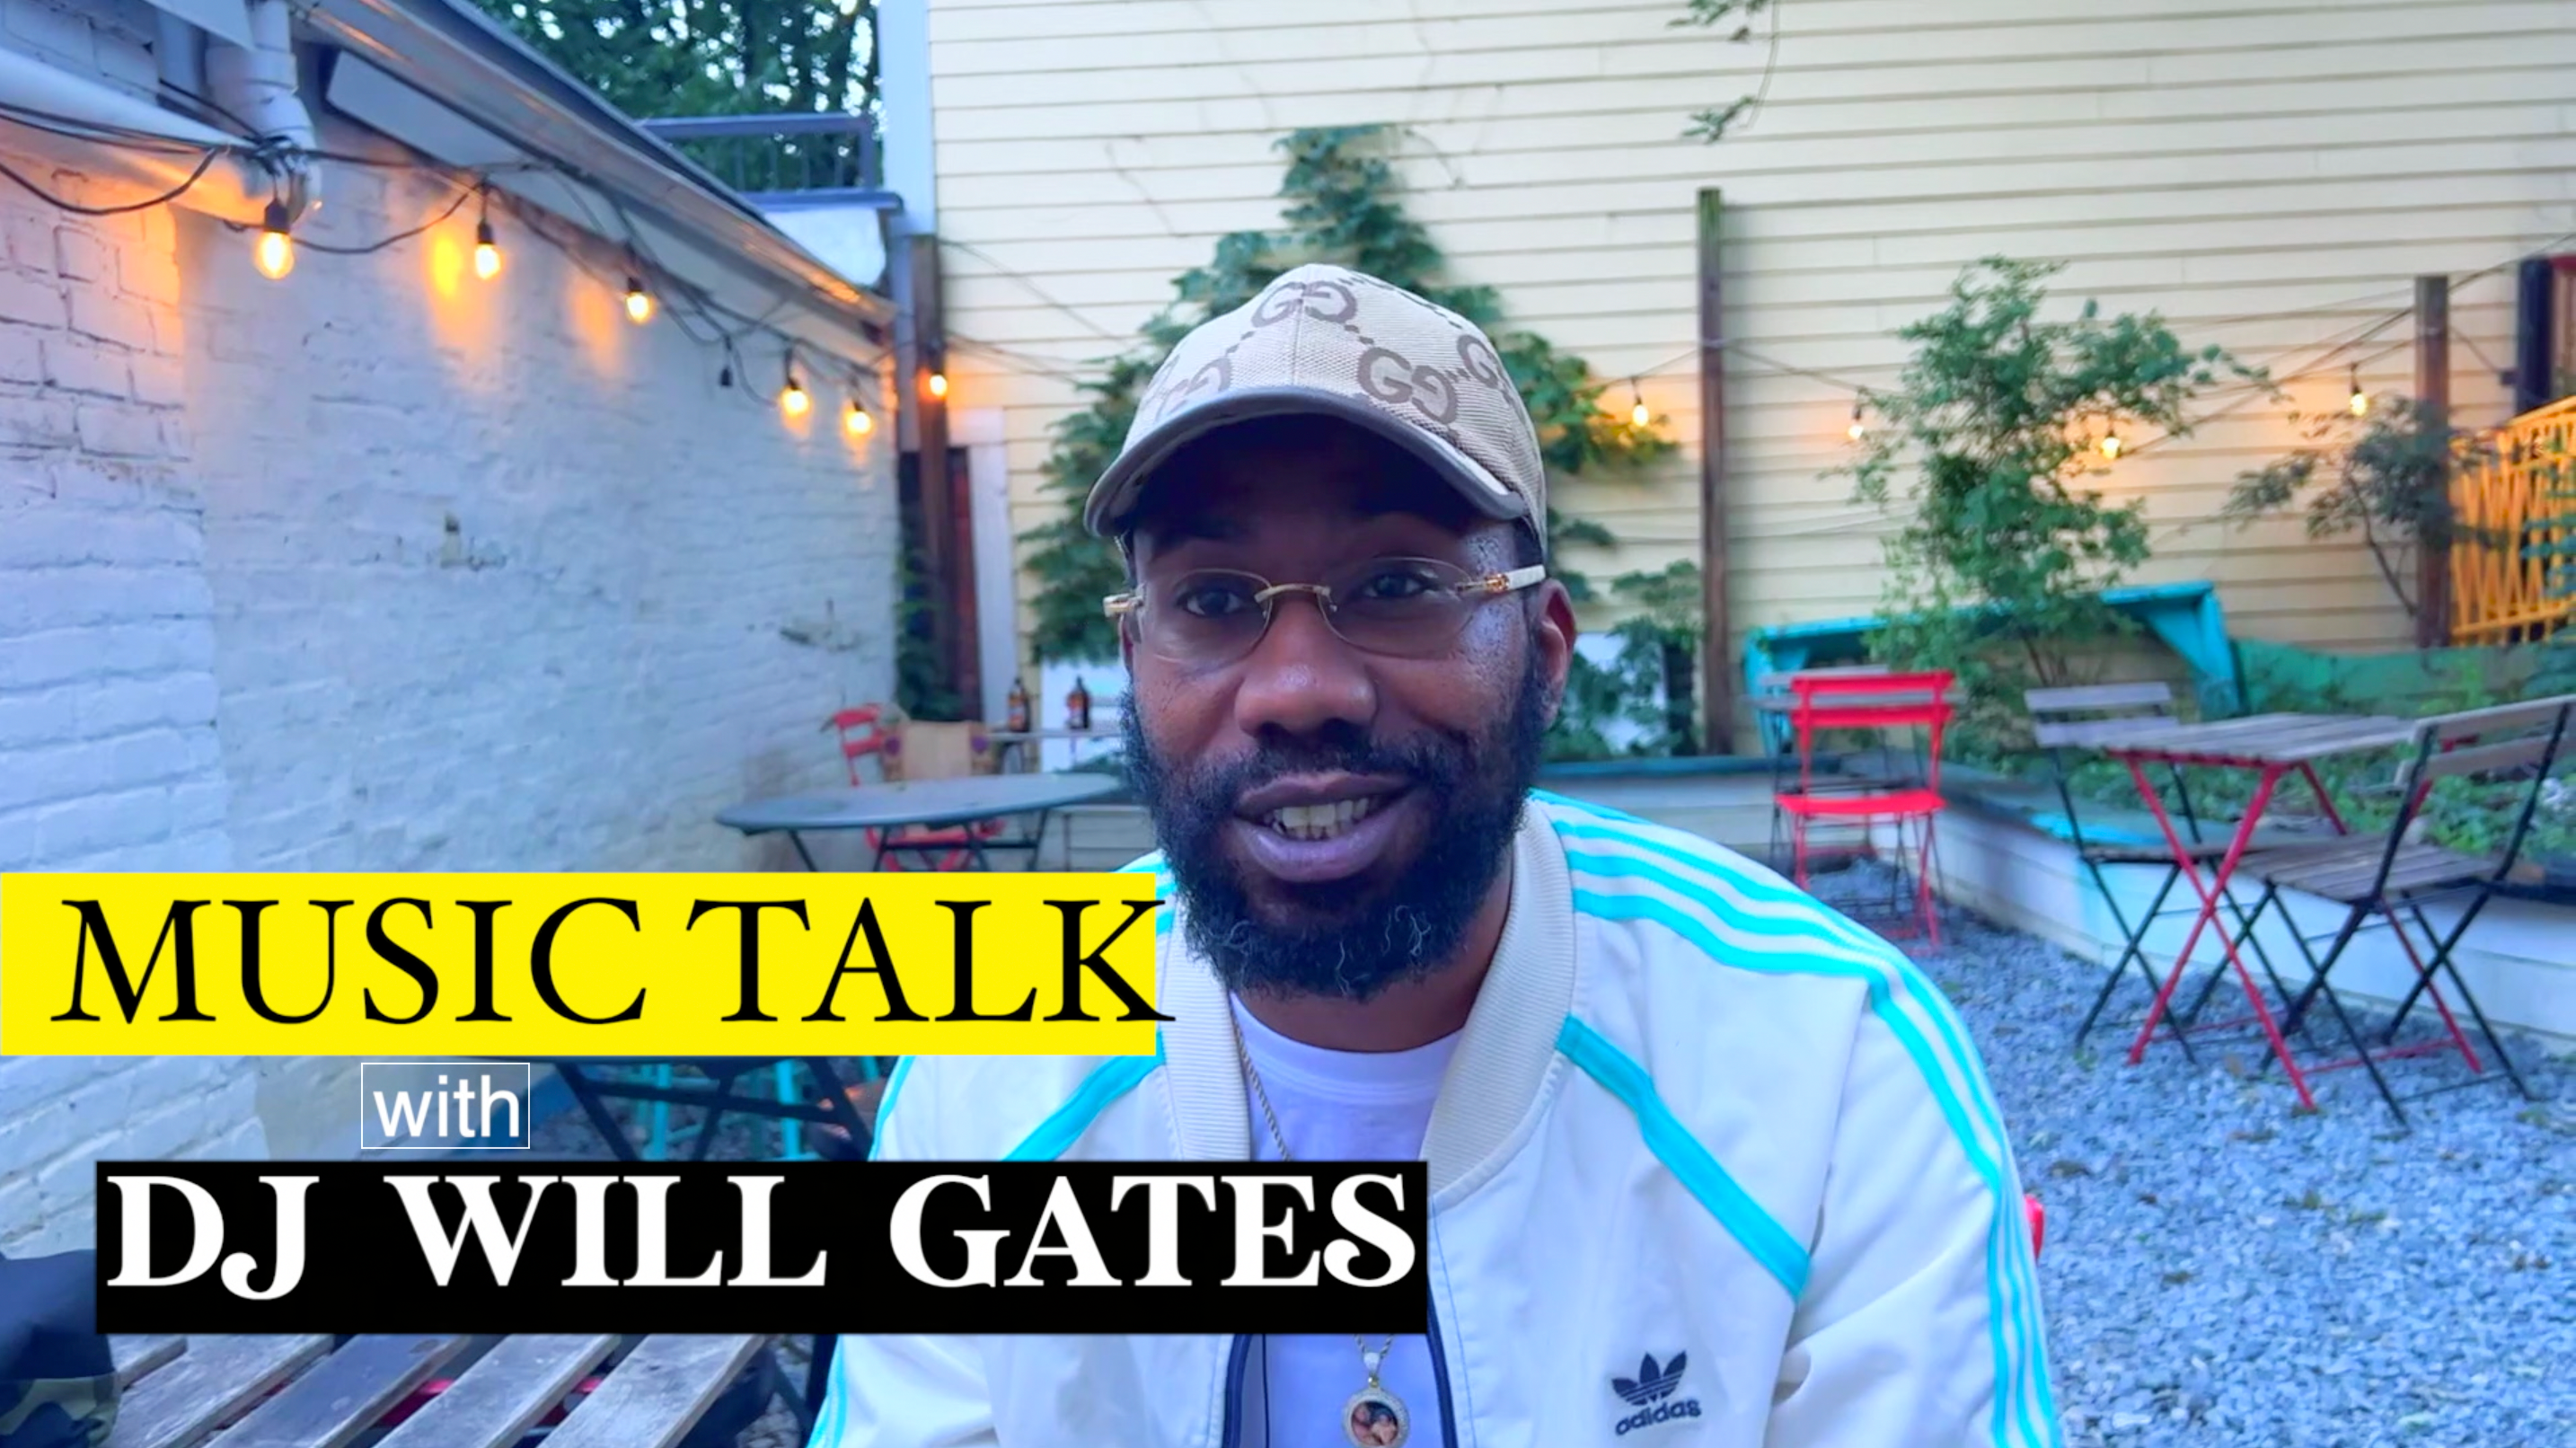 Music Talk with DJ WILL GATES